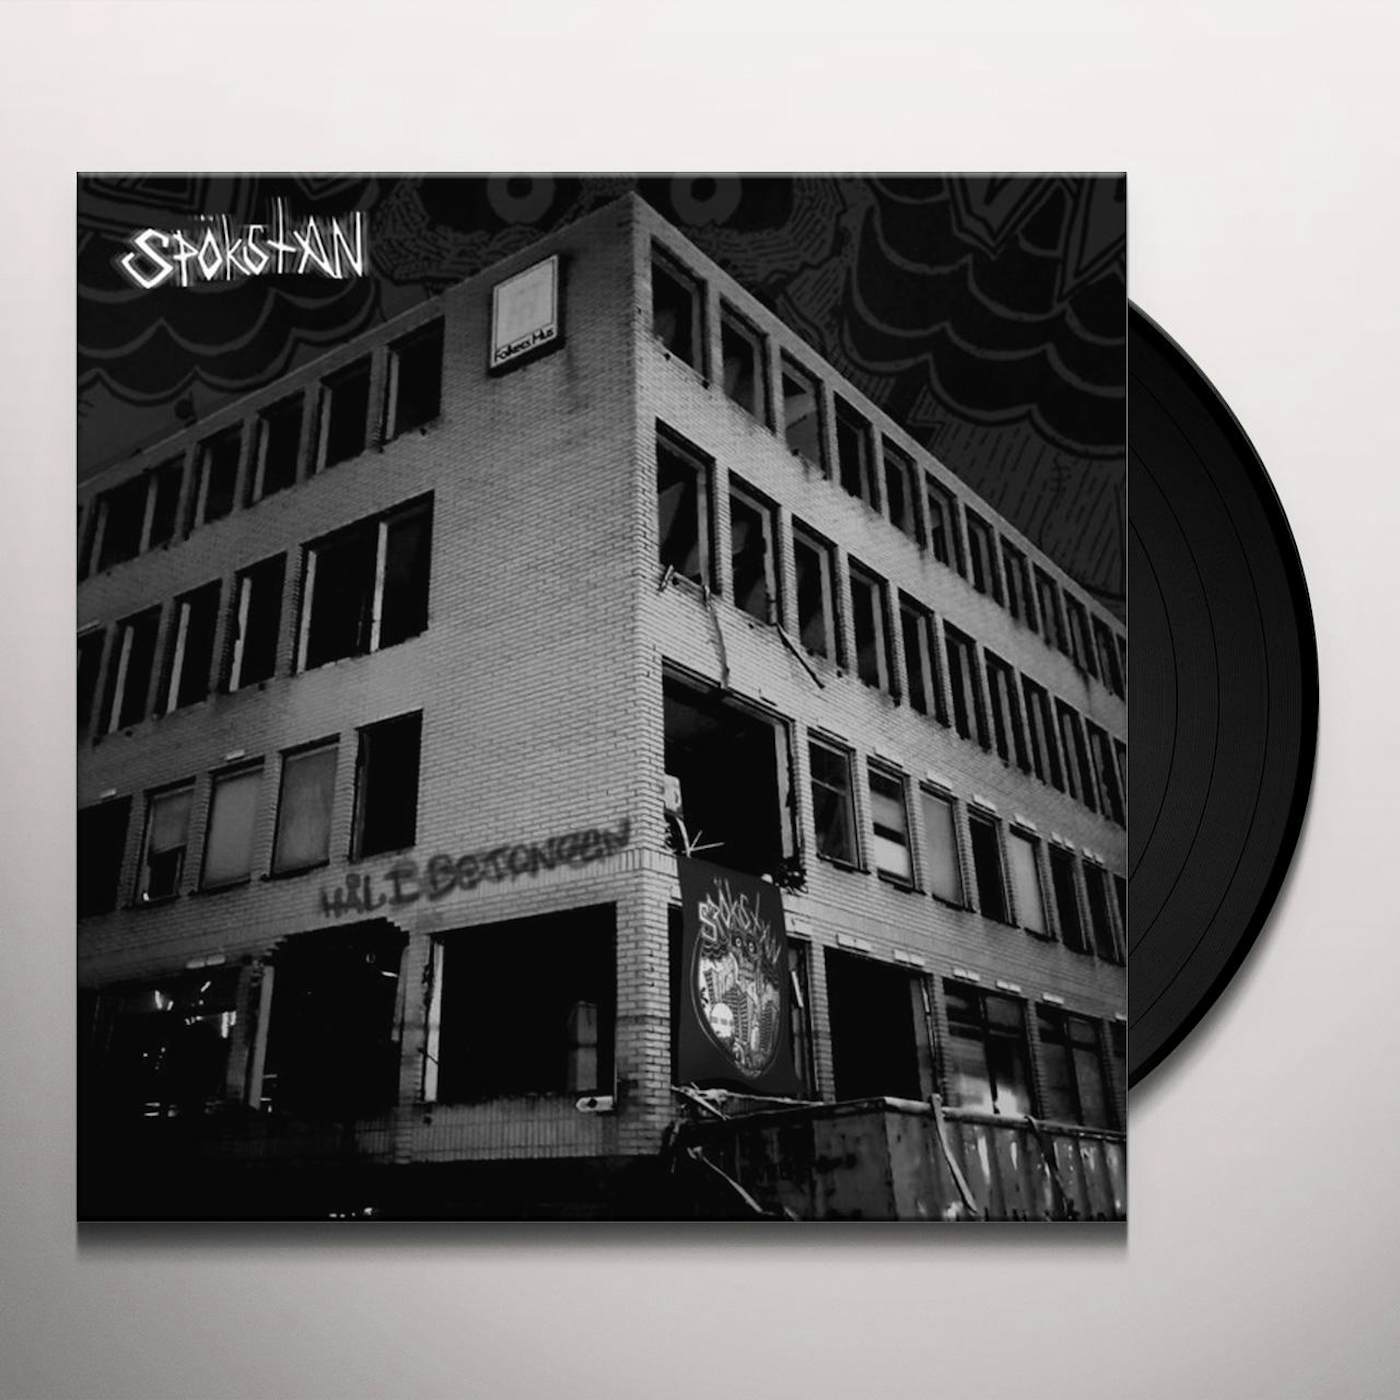 Spökstan HAL I BETONGEN Vinyl Record